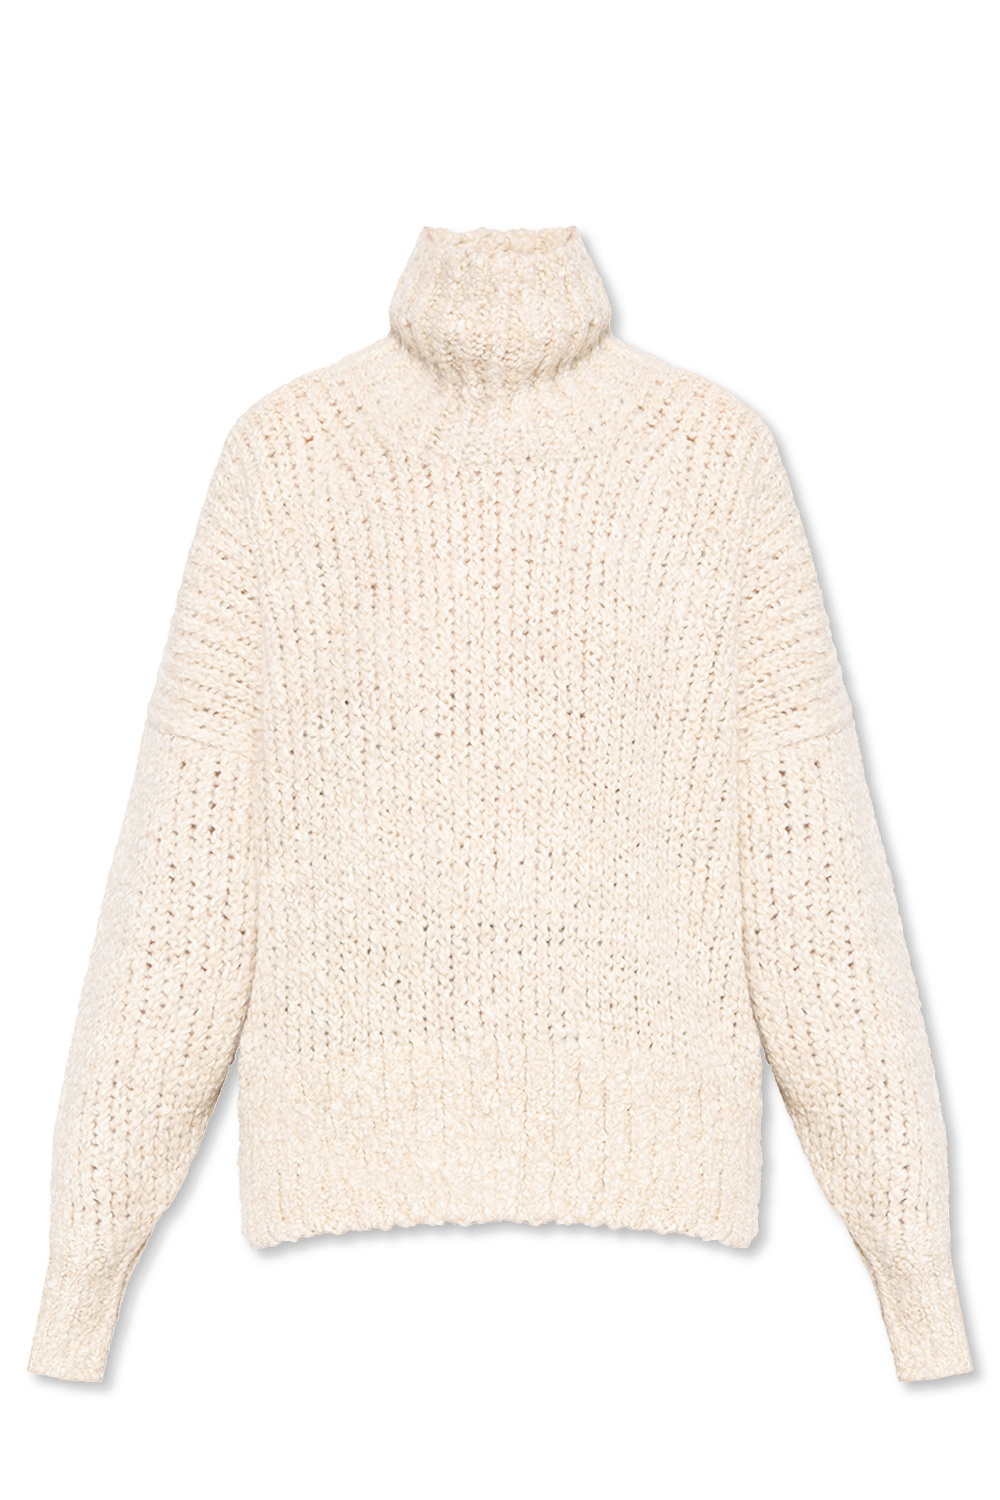 Totême Wool turtleneck sweater